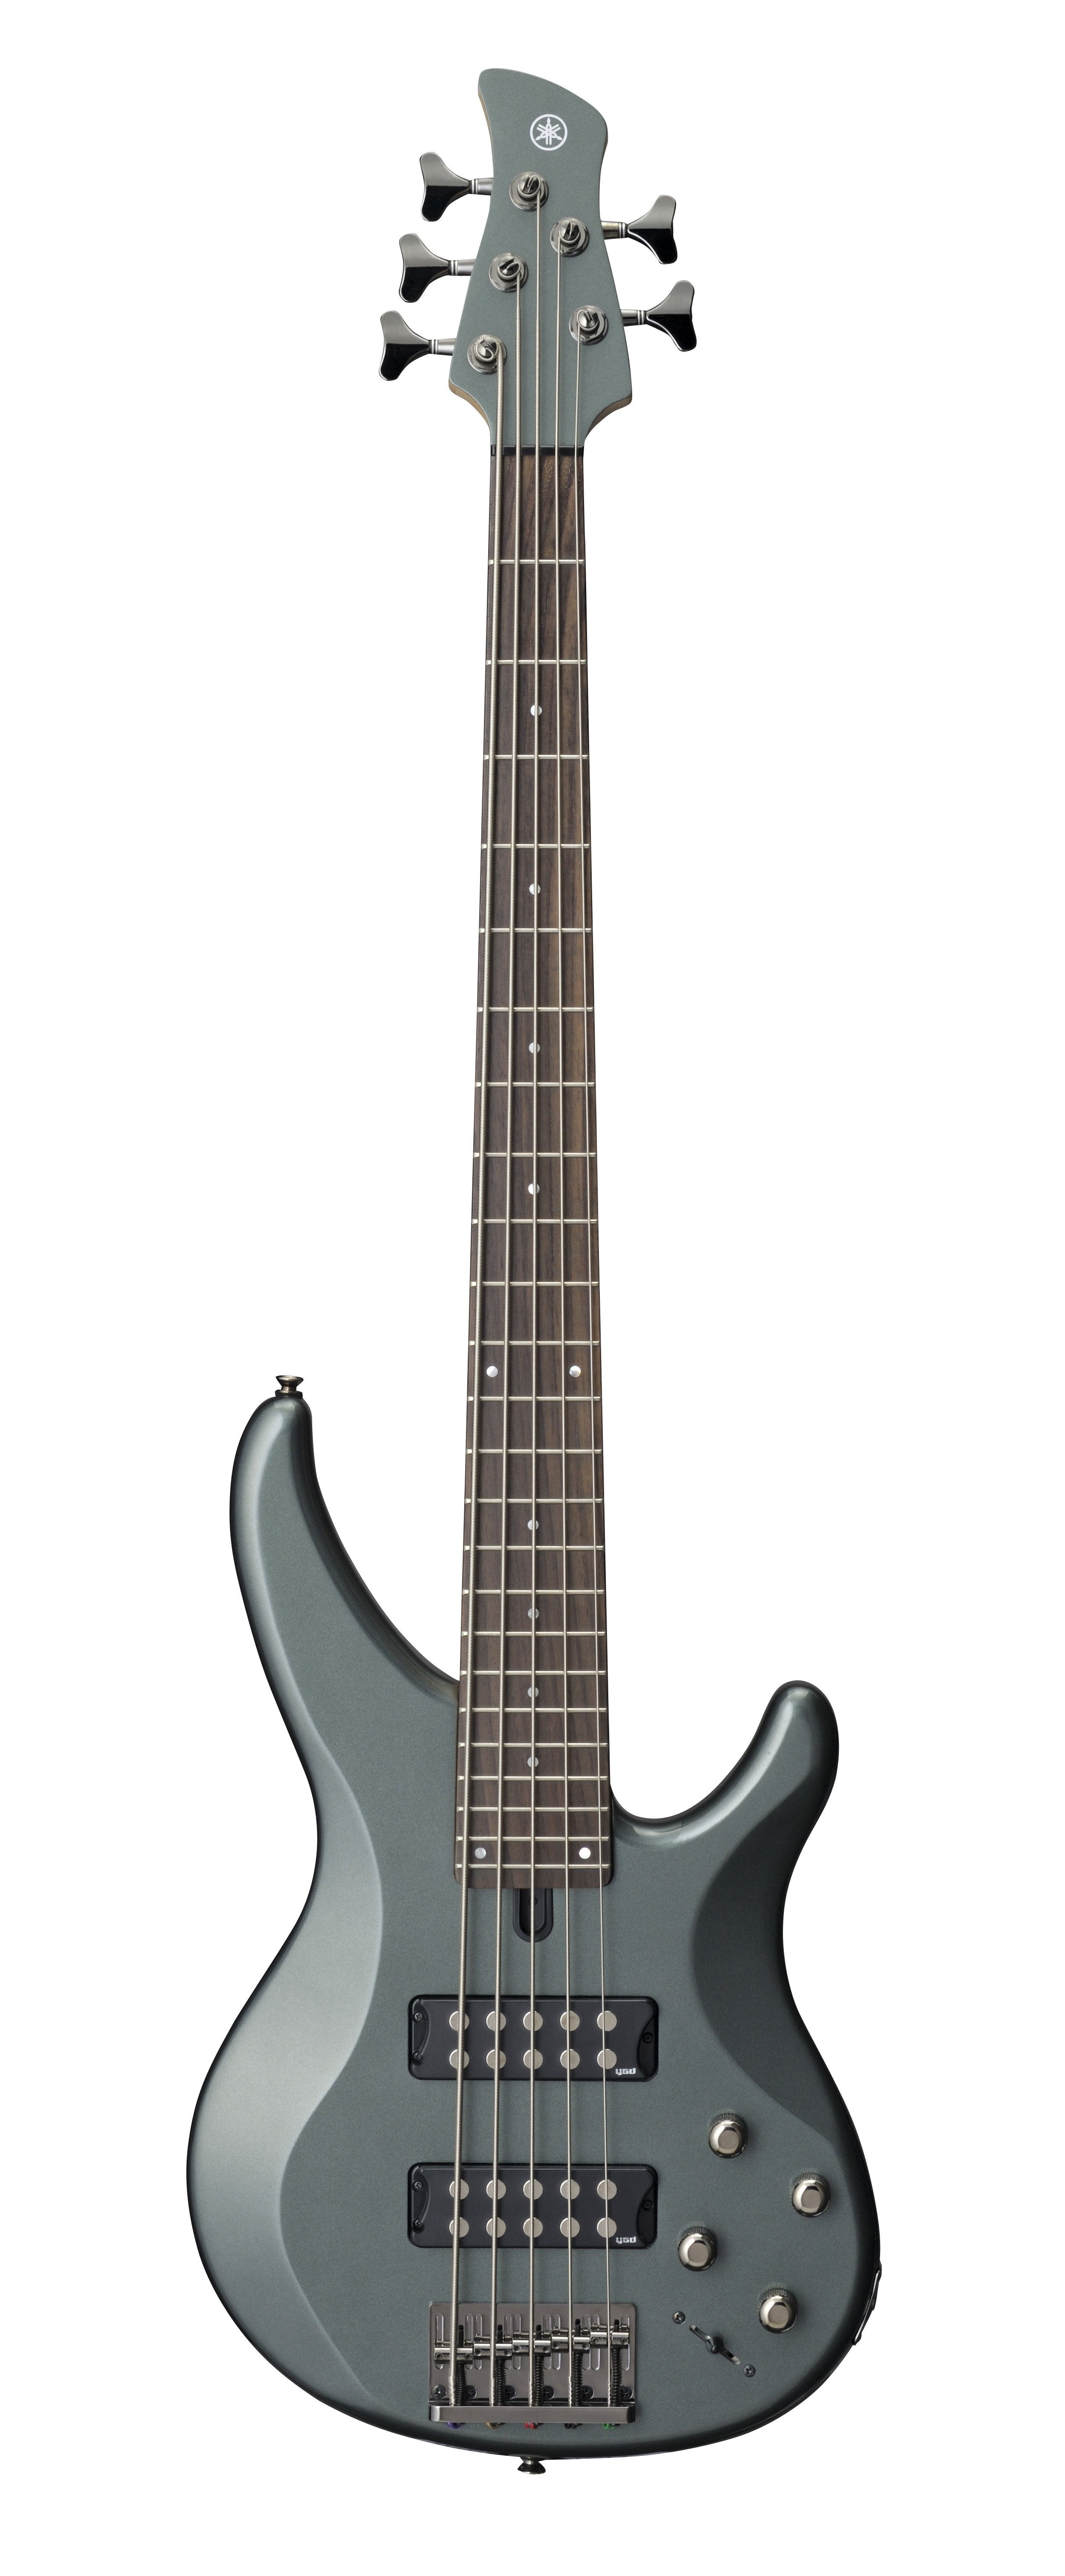 Yamaha TRBX305 Bass Guitar - Mist Green